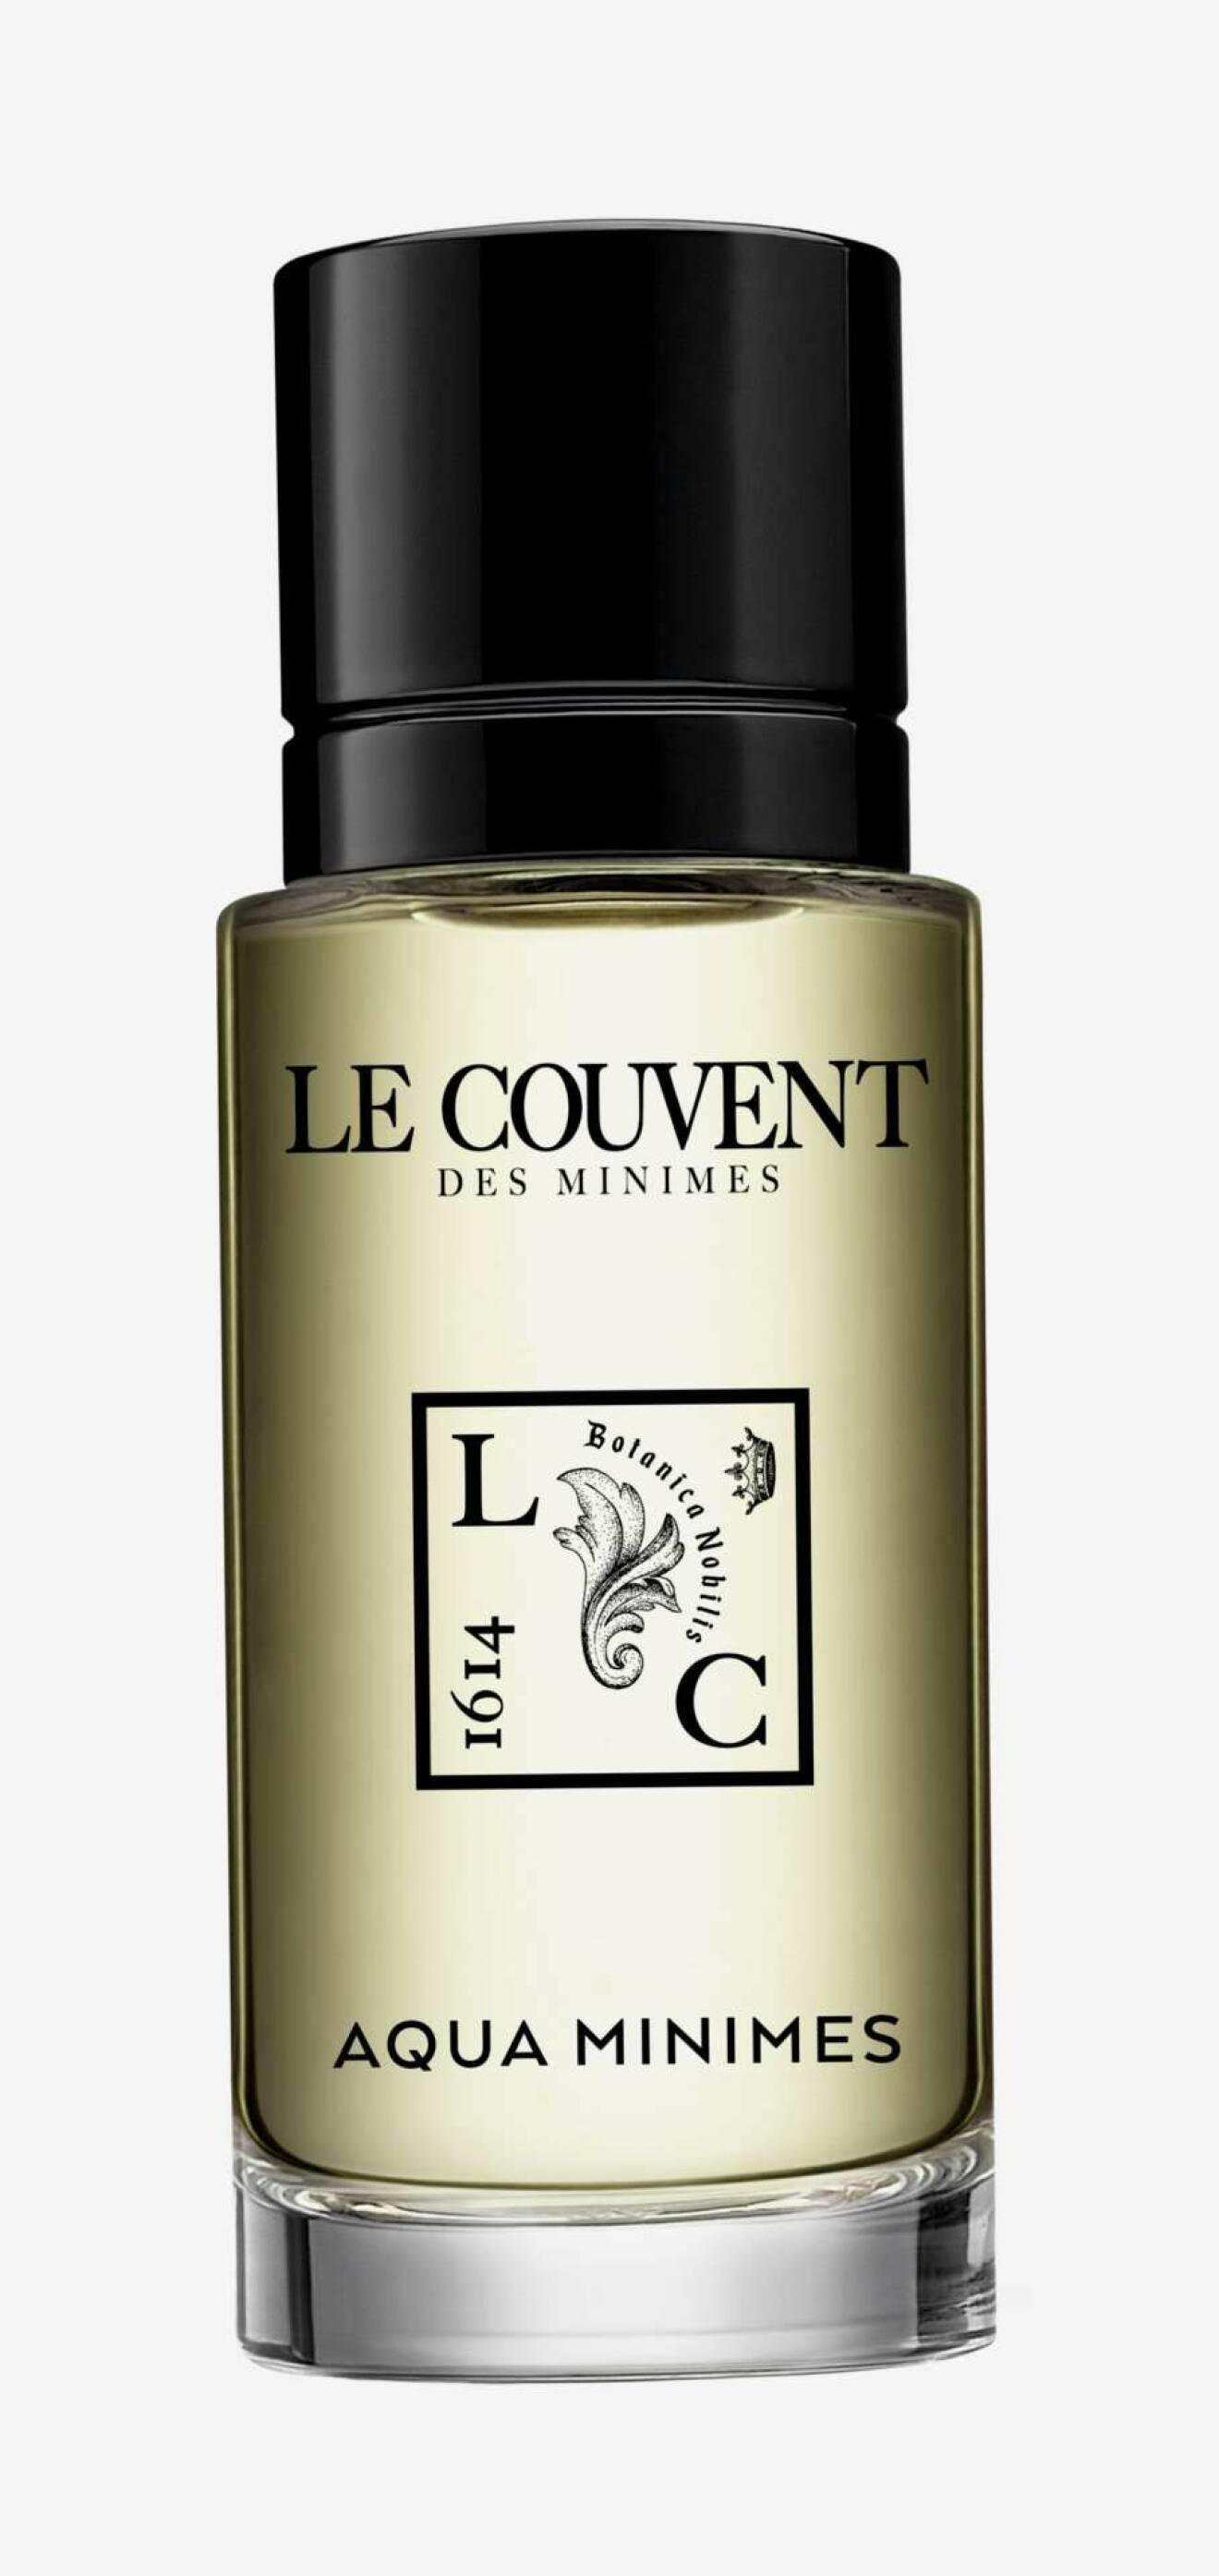 Parfymen Aqua Minimes från Le Couvent.